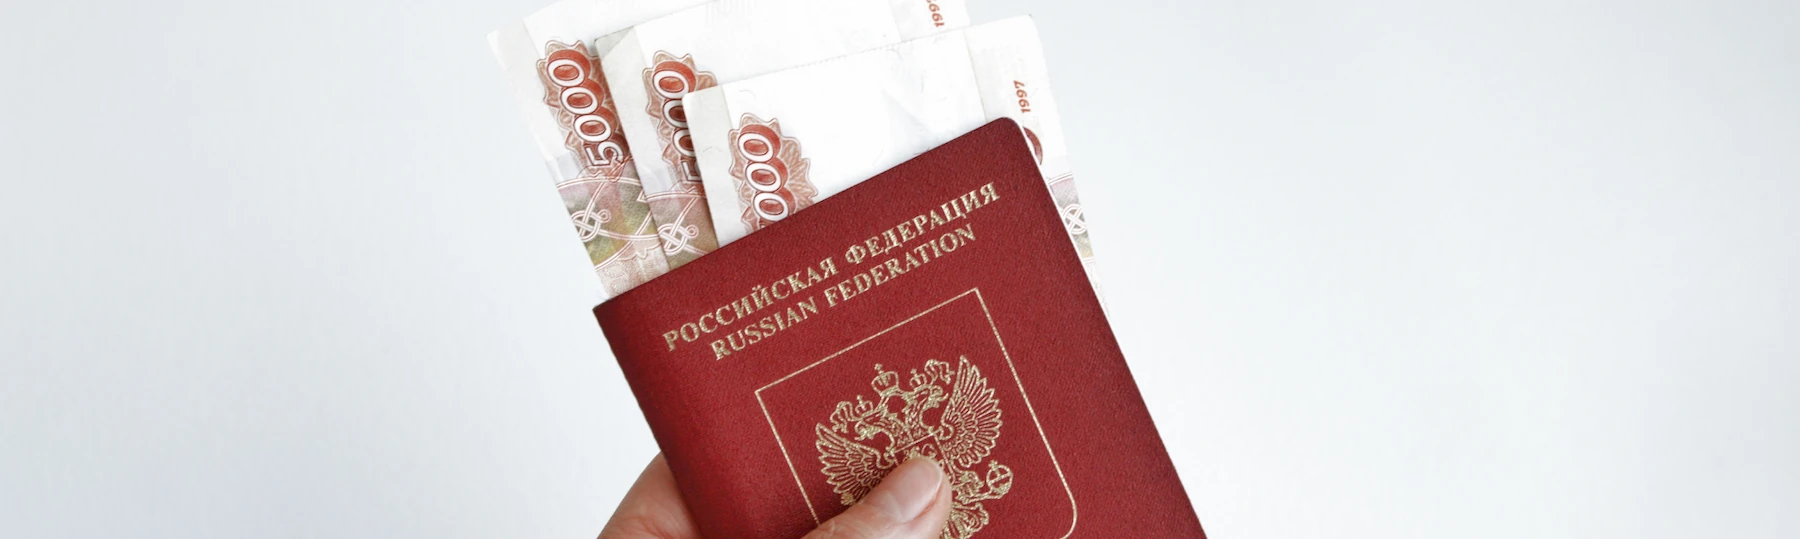 Деньги российский паспорт залог